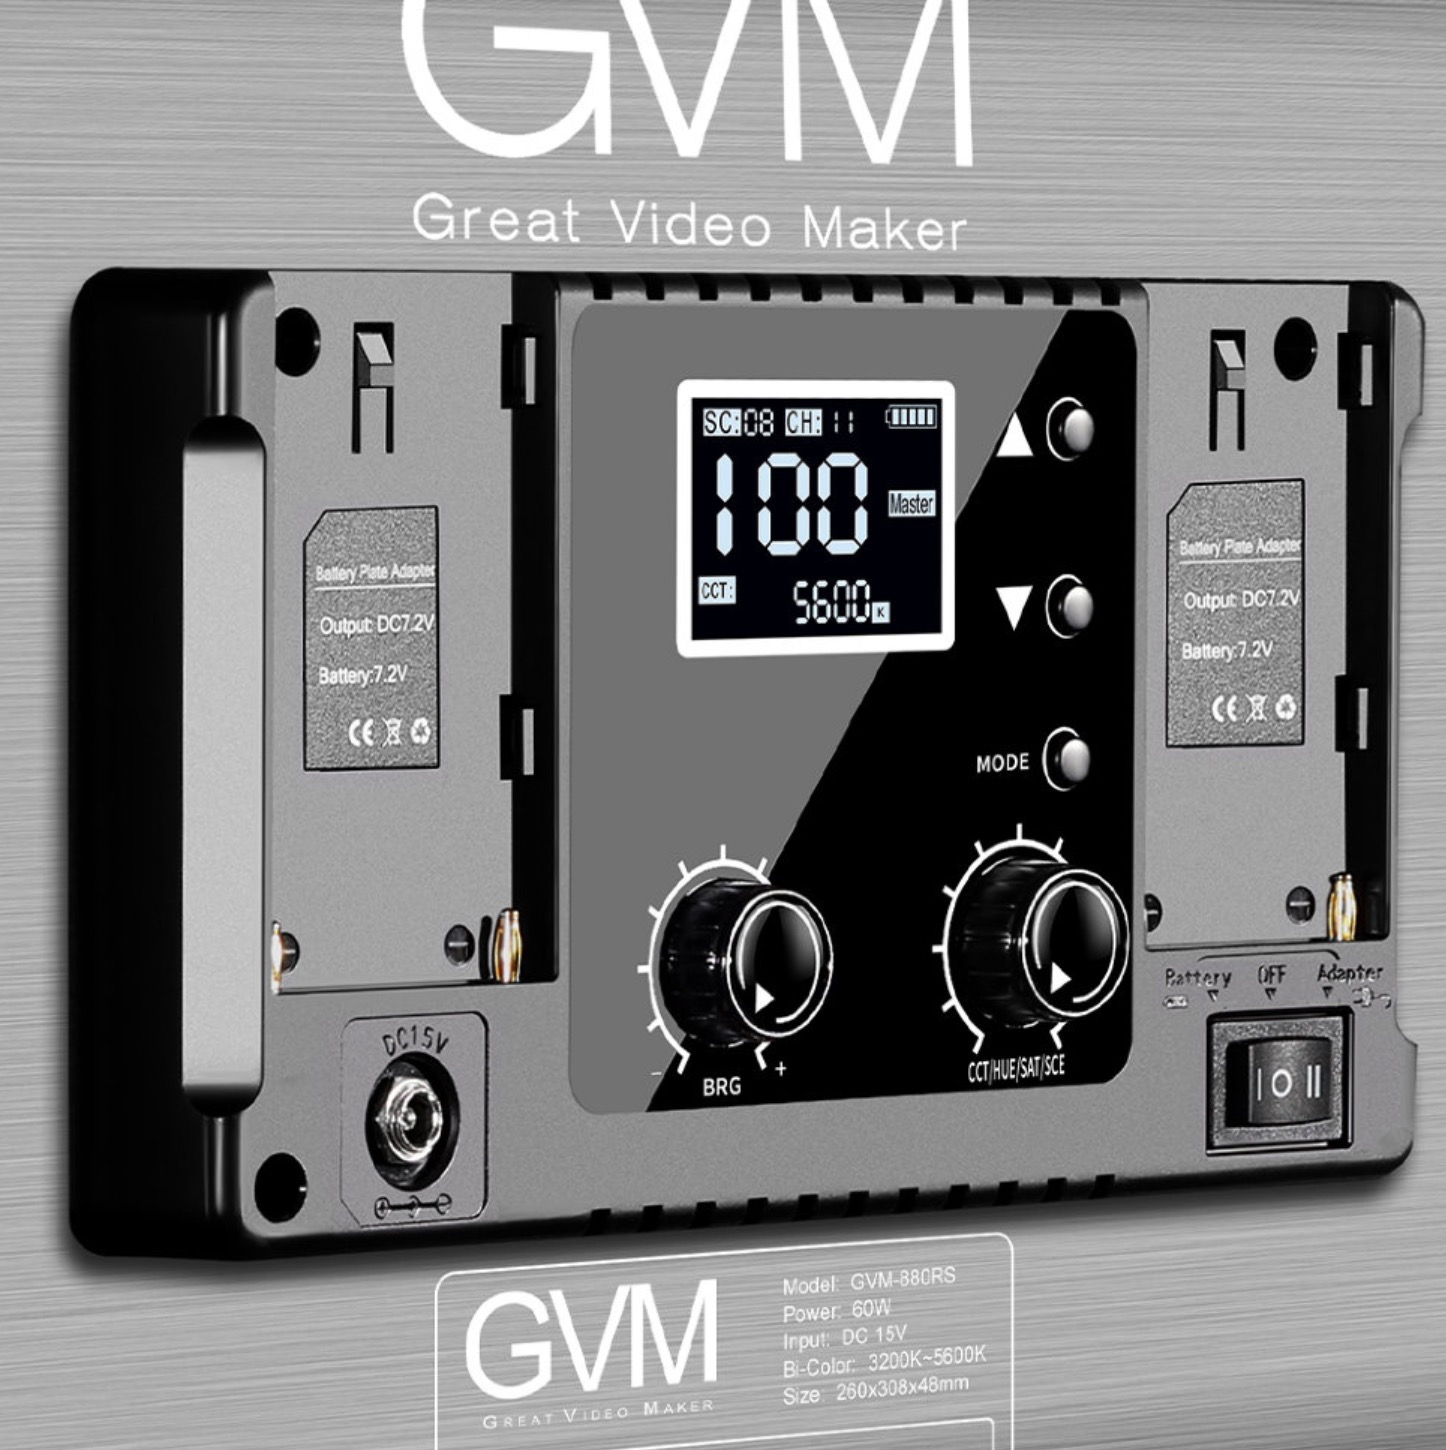 Осветитель GVM 880RS